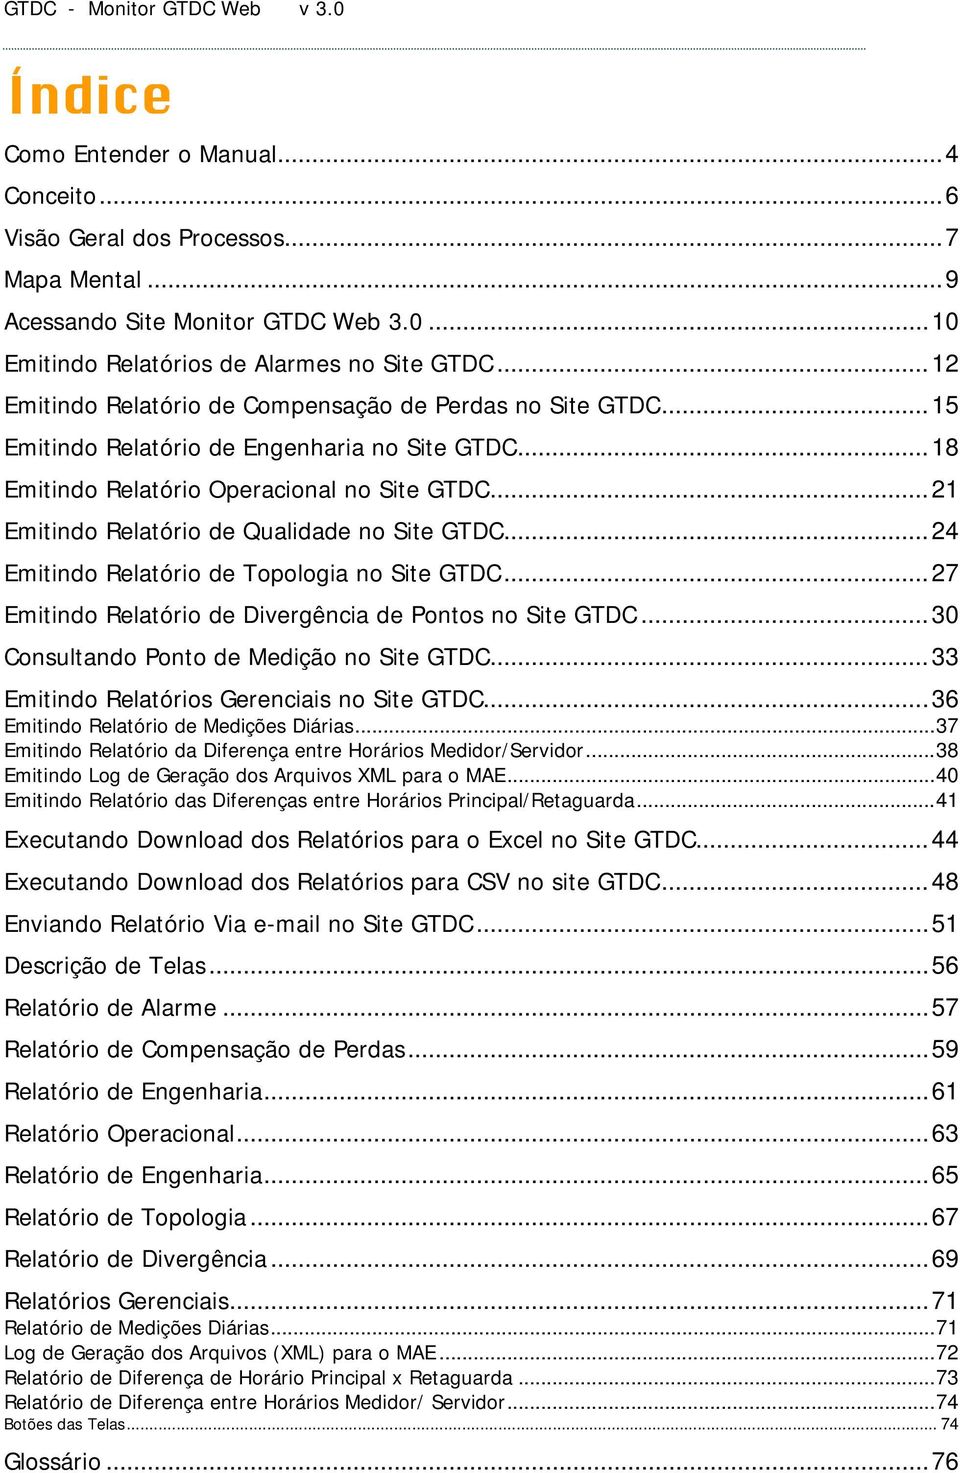 ..21 Emitindo Relatório de Qualidade no Site GTDC...24 Emitindo Relatório de Topologia no Site GTDC...27 Emitindo Relatório de Divergência de Pontos no Site GTDC.